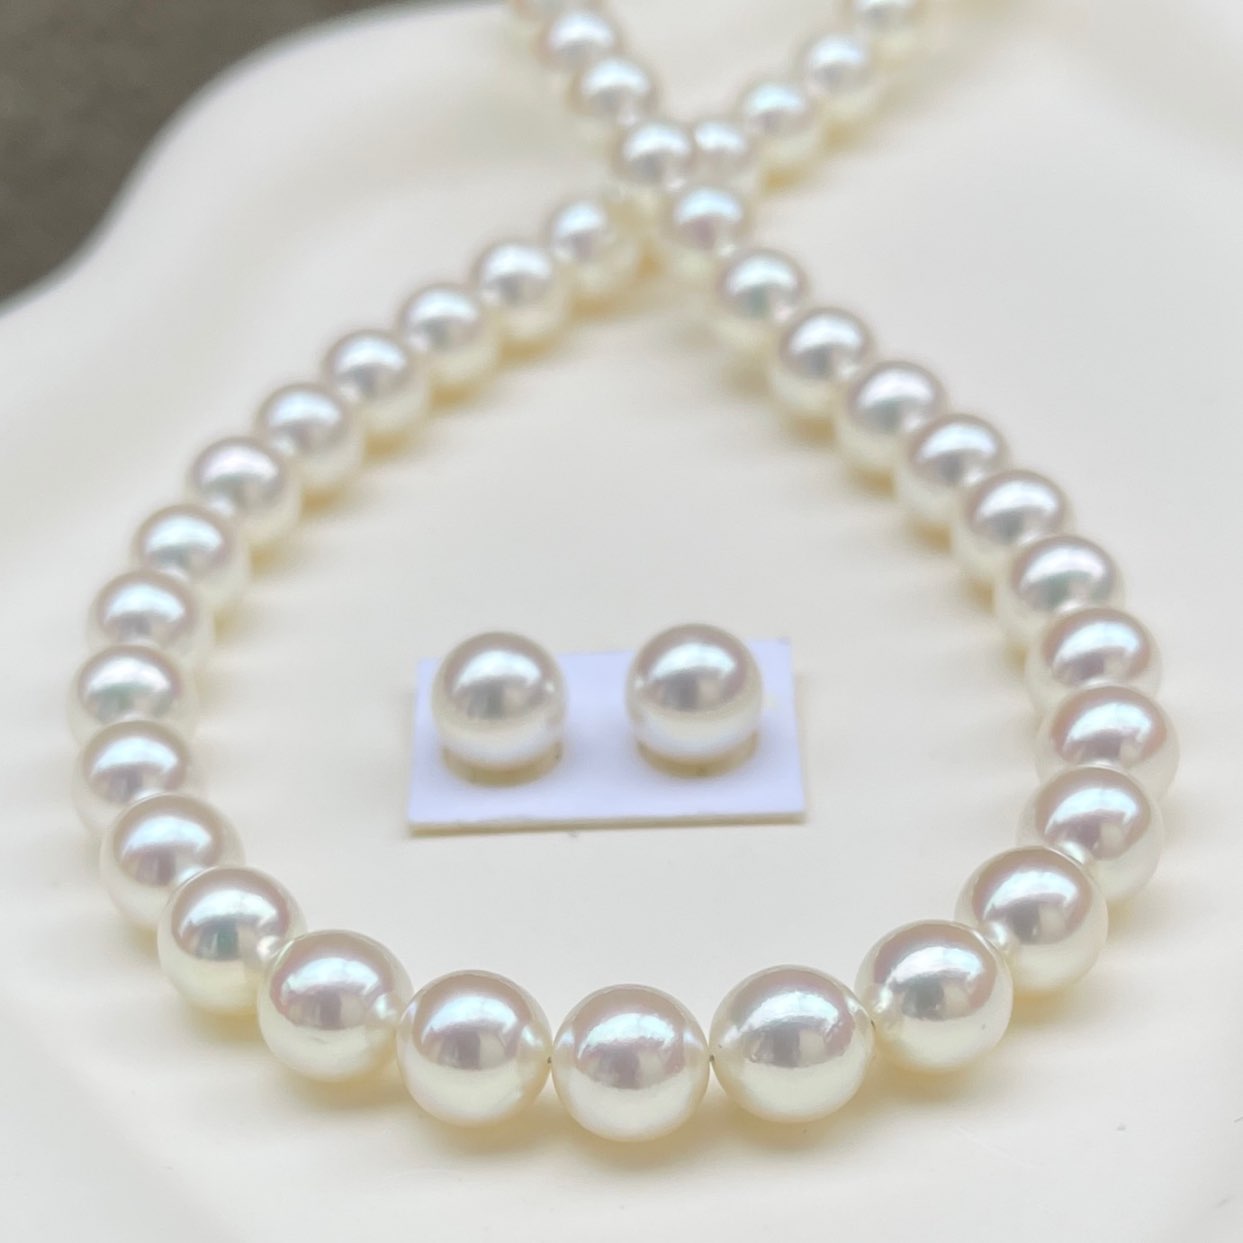 オーロラロゼ真珠ネックレス7.5-8.0㎜無調色真科研鑑別付きを正面から見ている